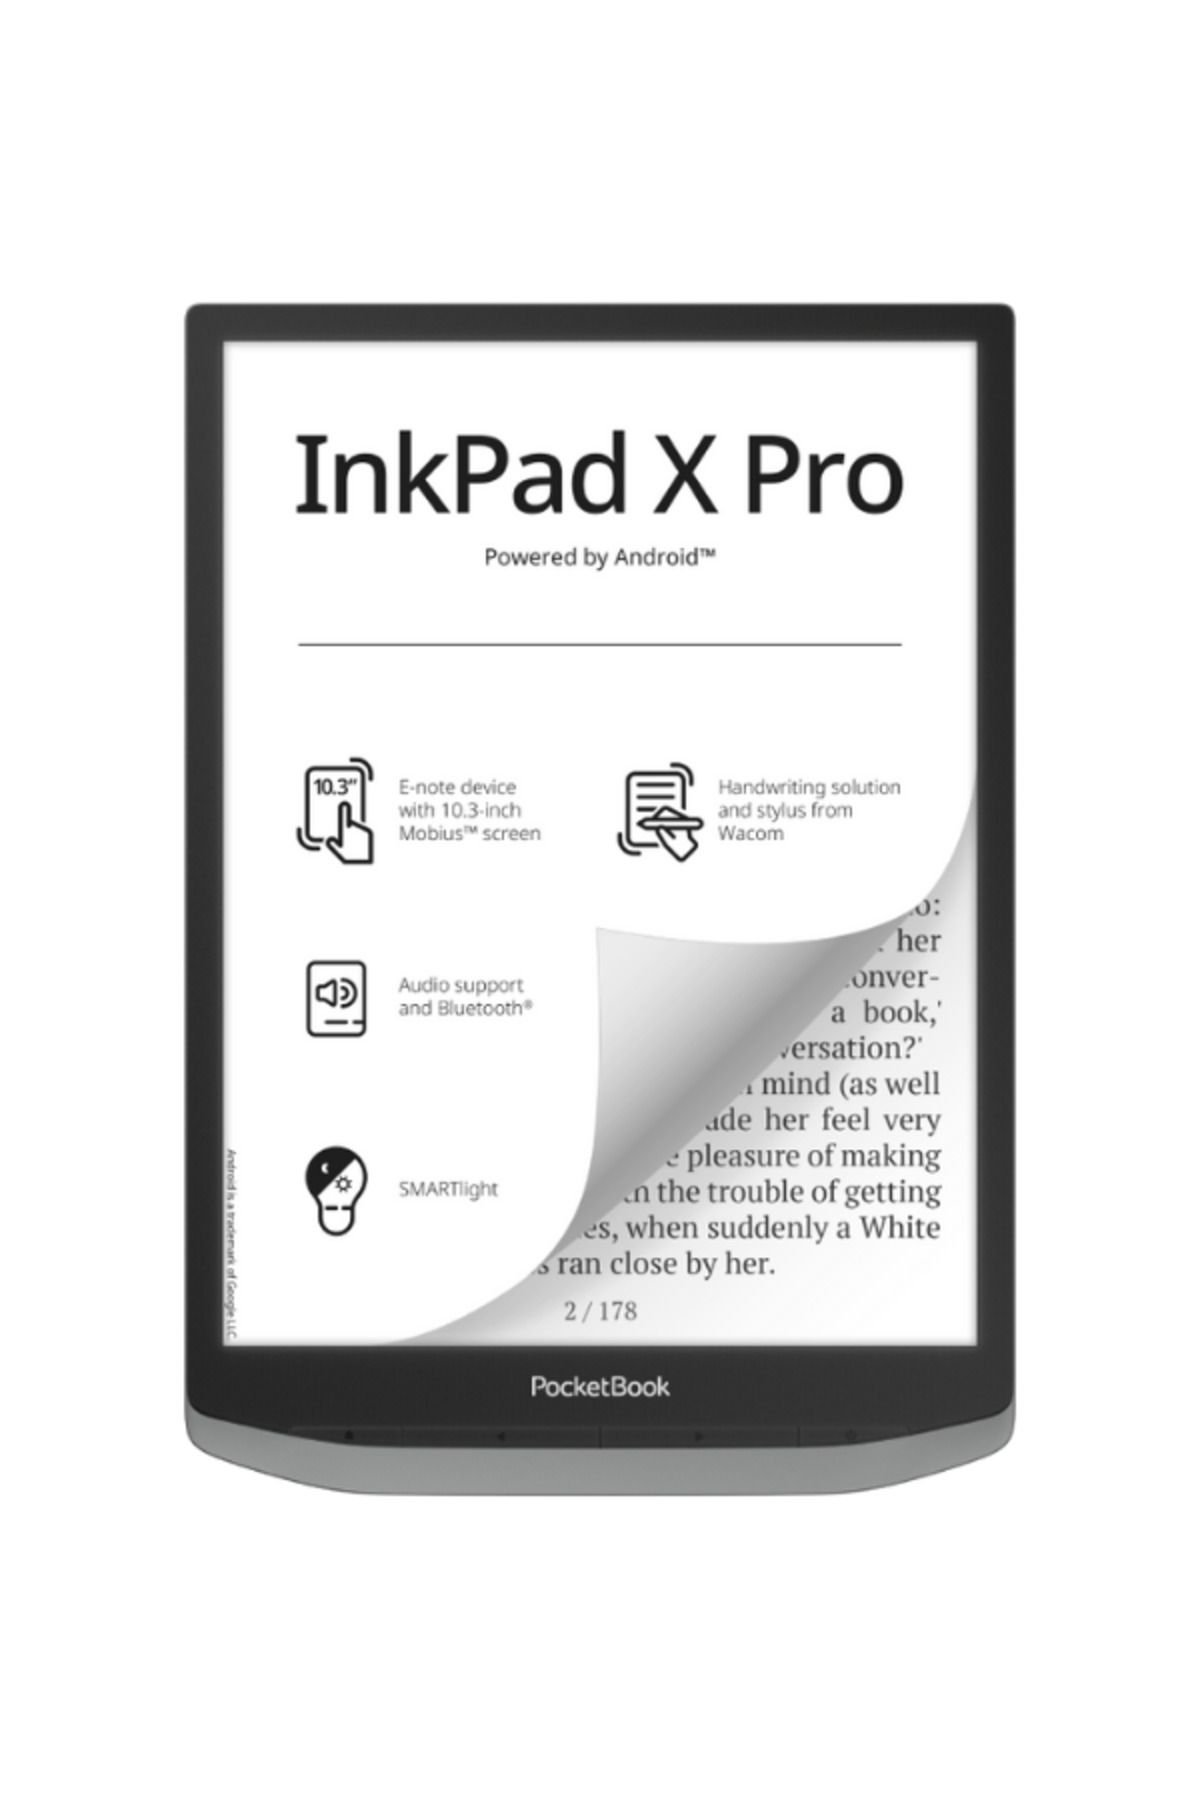 pocketbook InkPad X Pro